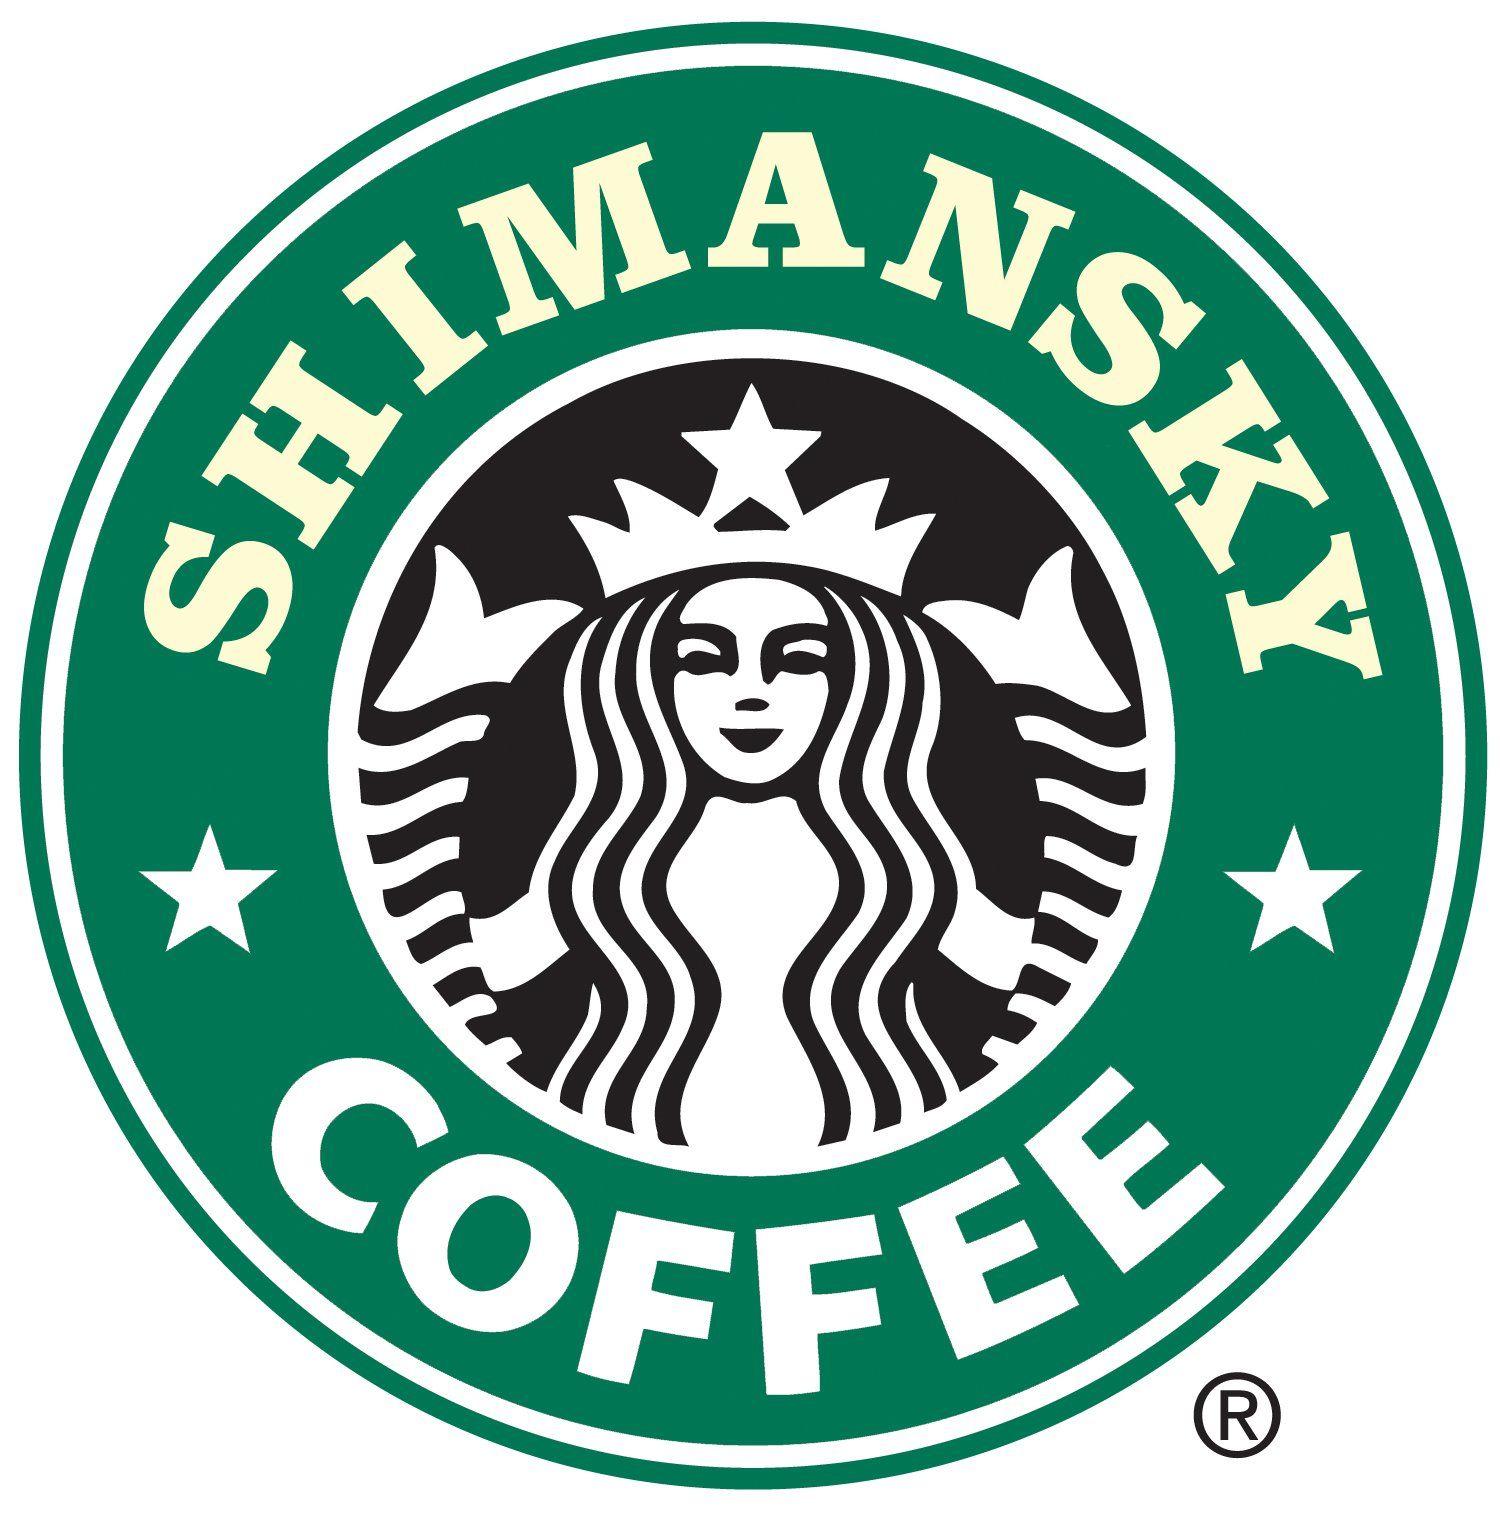 Starbucks Coffee Logo - Starbucks coffee logo psd